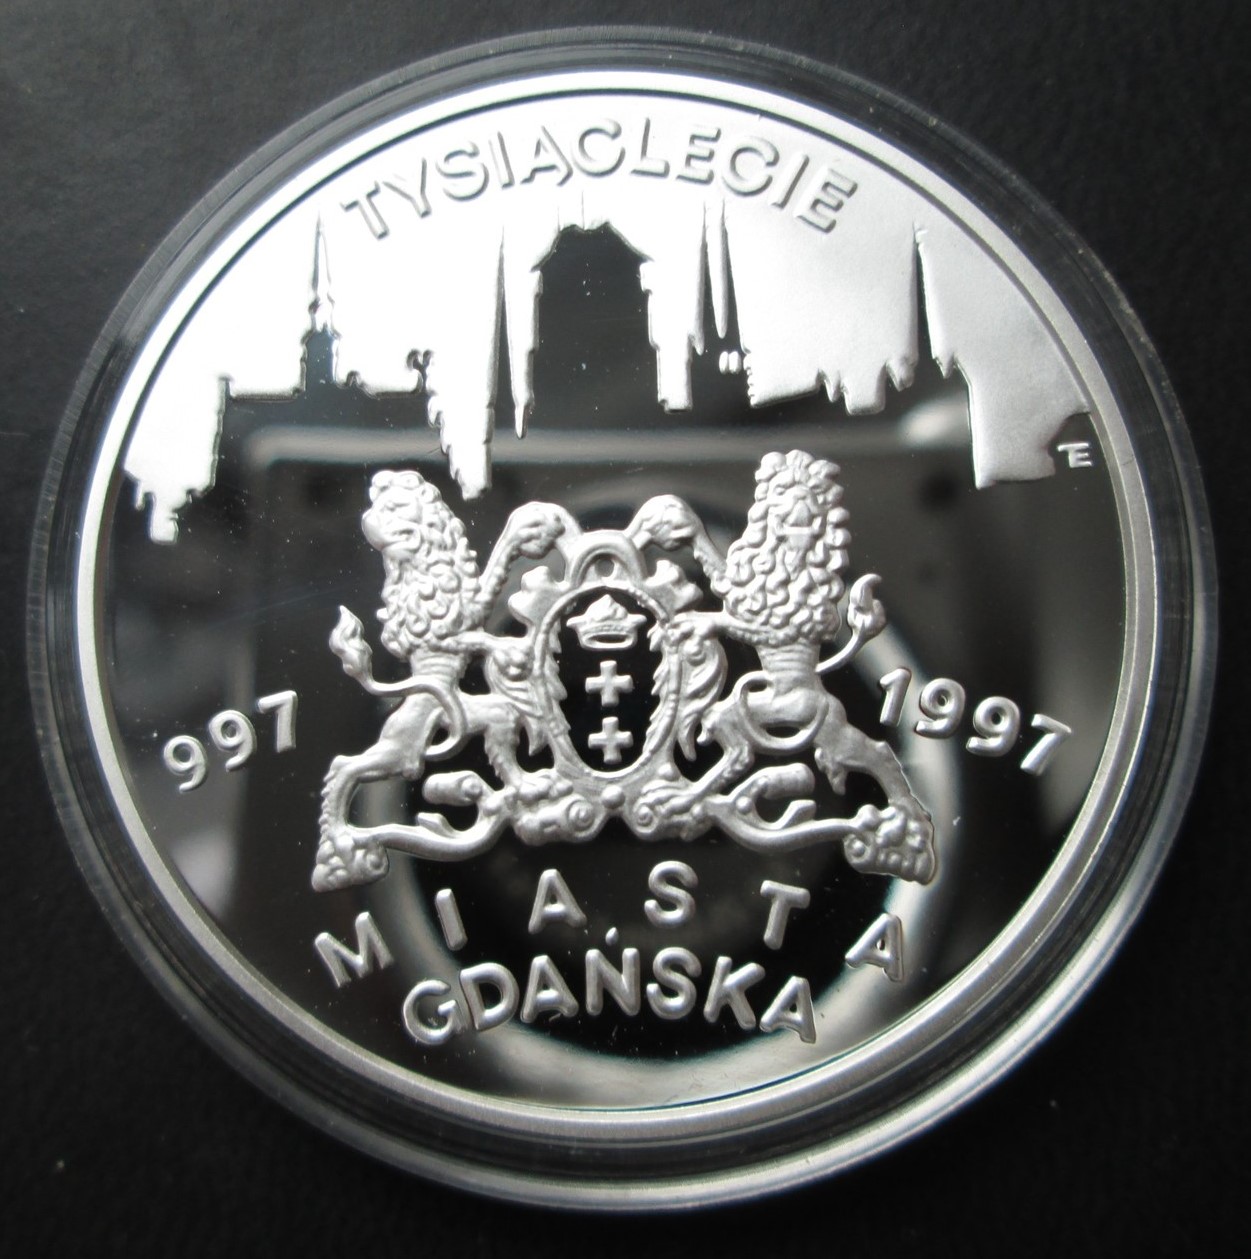 20 złotych 1996 Tysiąclecie Miasta Gdańska 